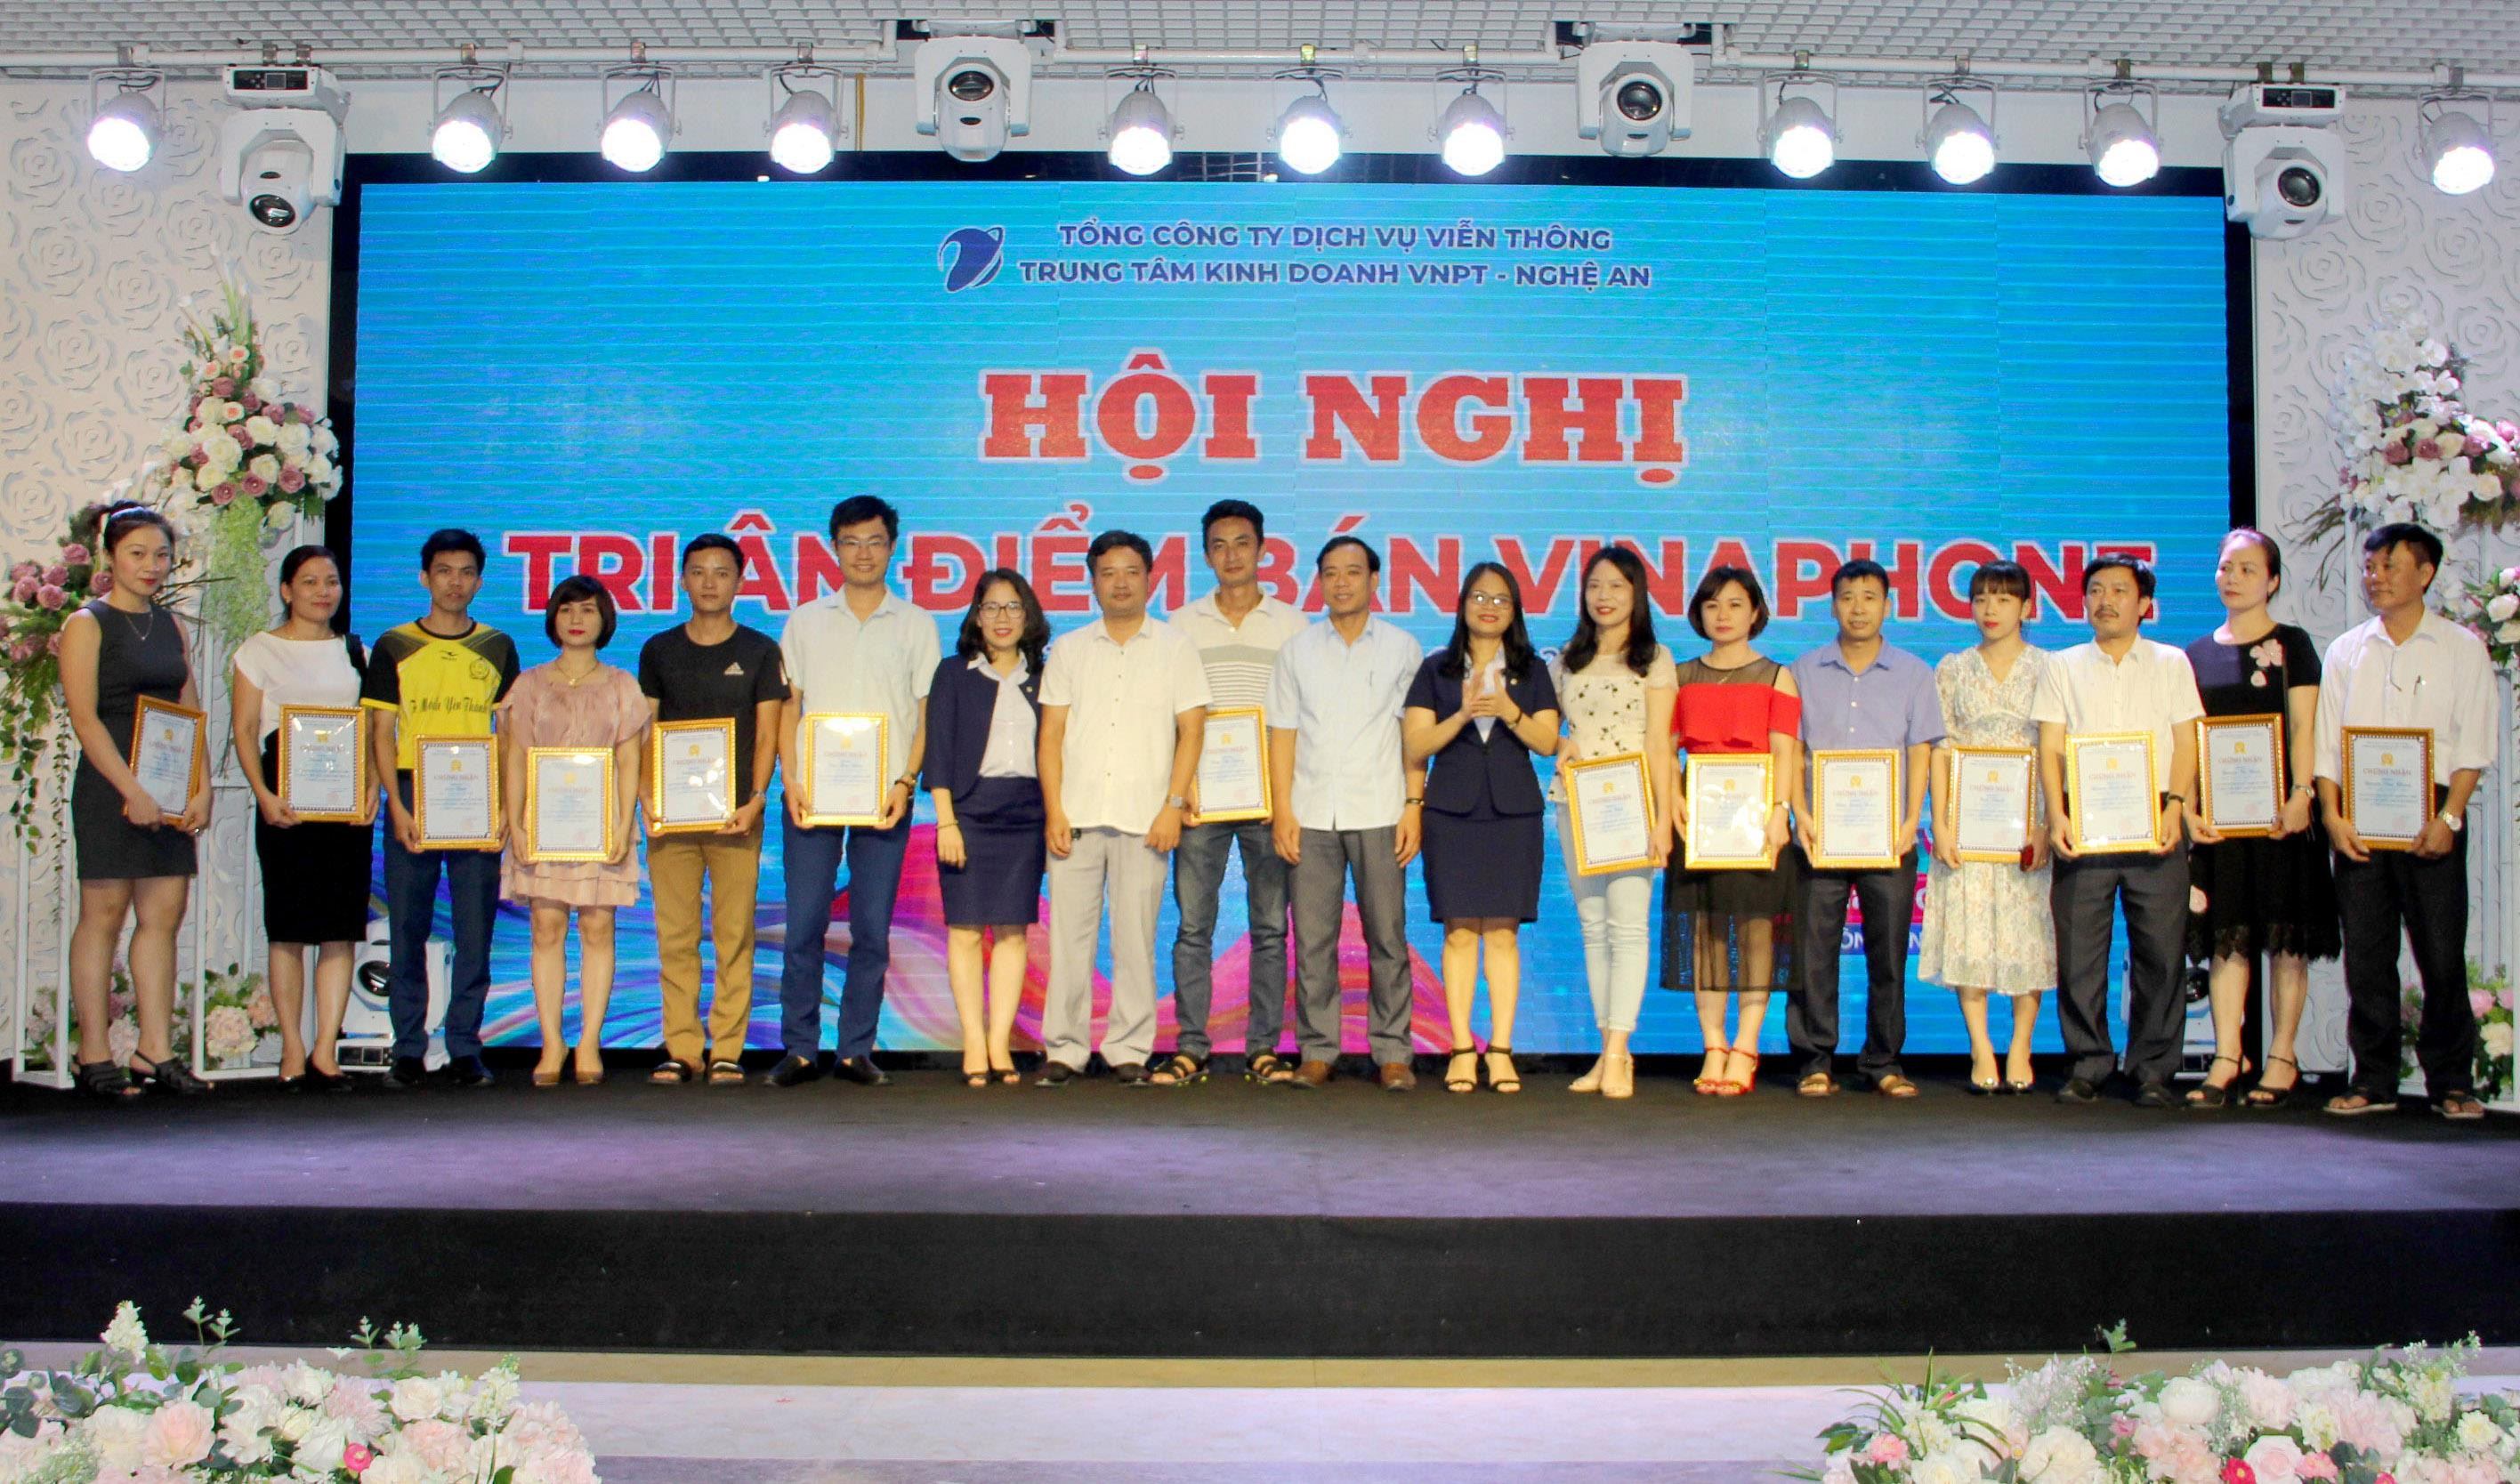 Các đại lý điểm bán trên toàn tỉnh Nghệ An được vinh danh  tại Hội nghị tri ân điểm bán Vinaphone 2019. Ảnh: Ngọc Anh